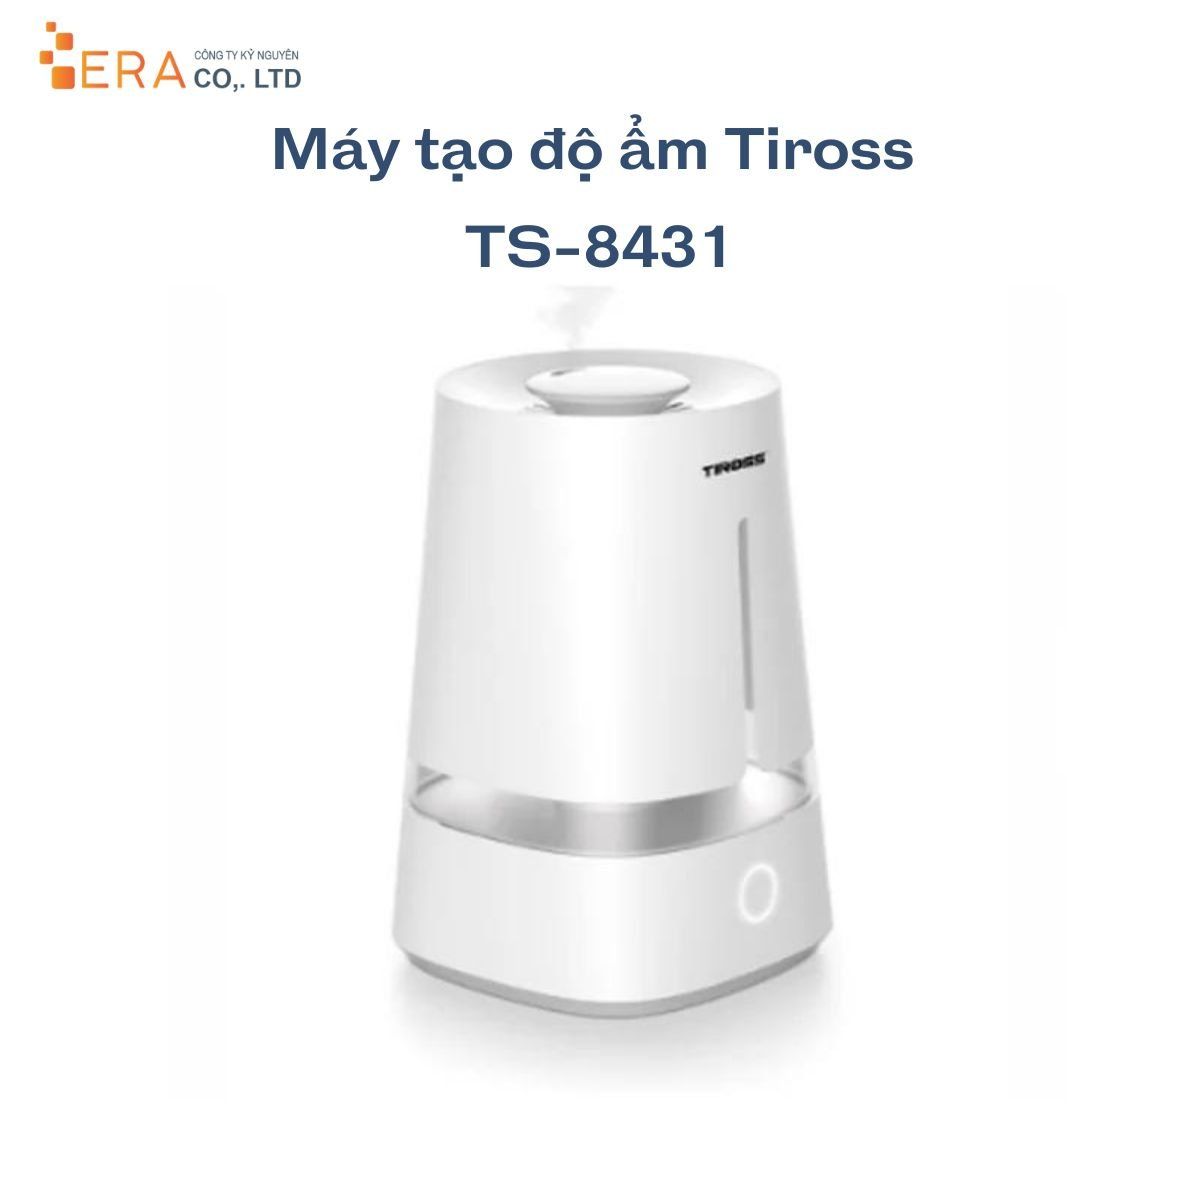  Máy tạo độ ẩm Tiross TS-8431 